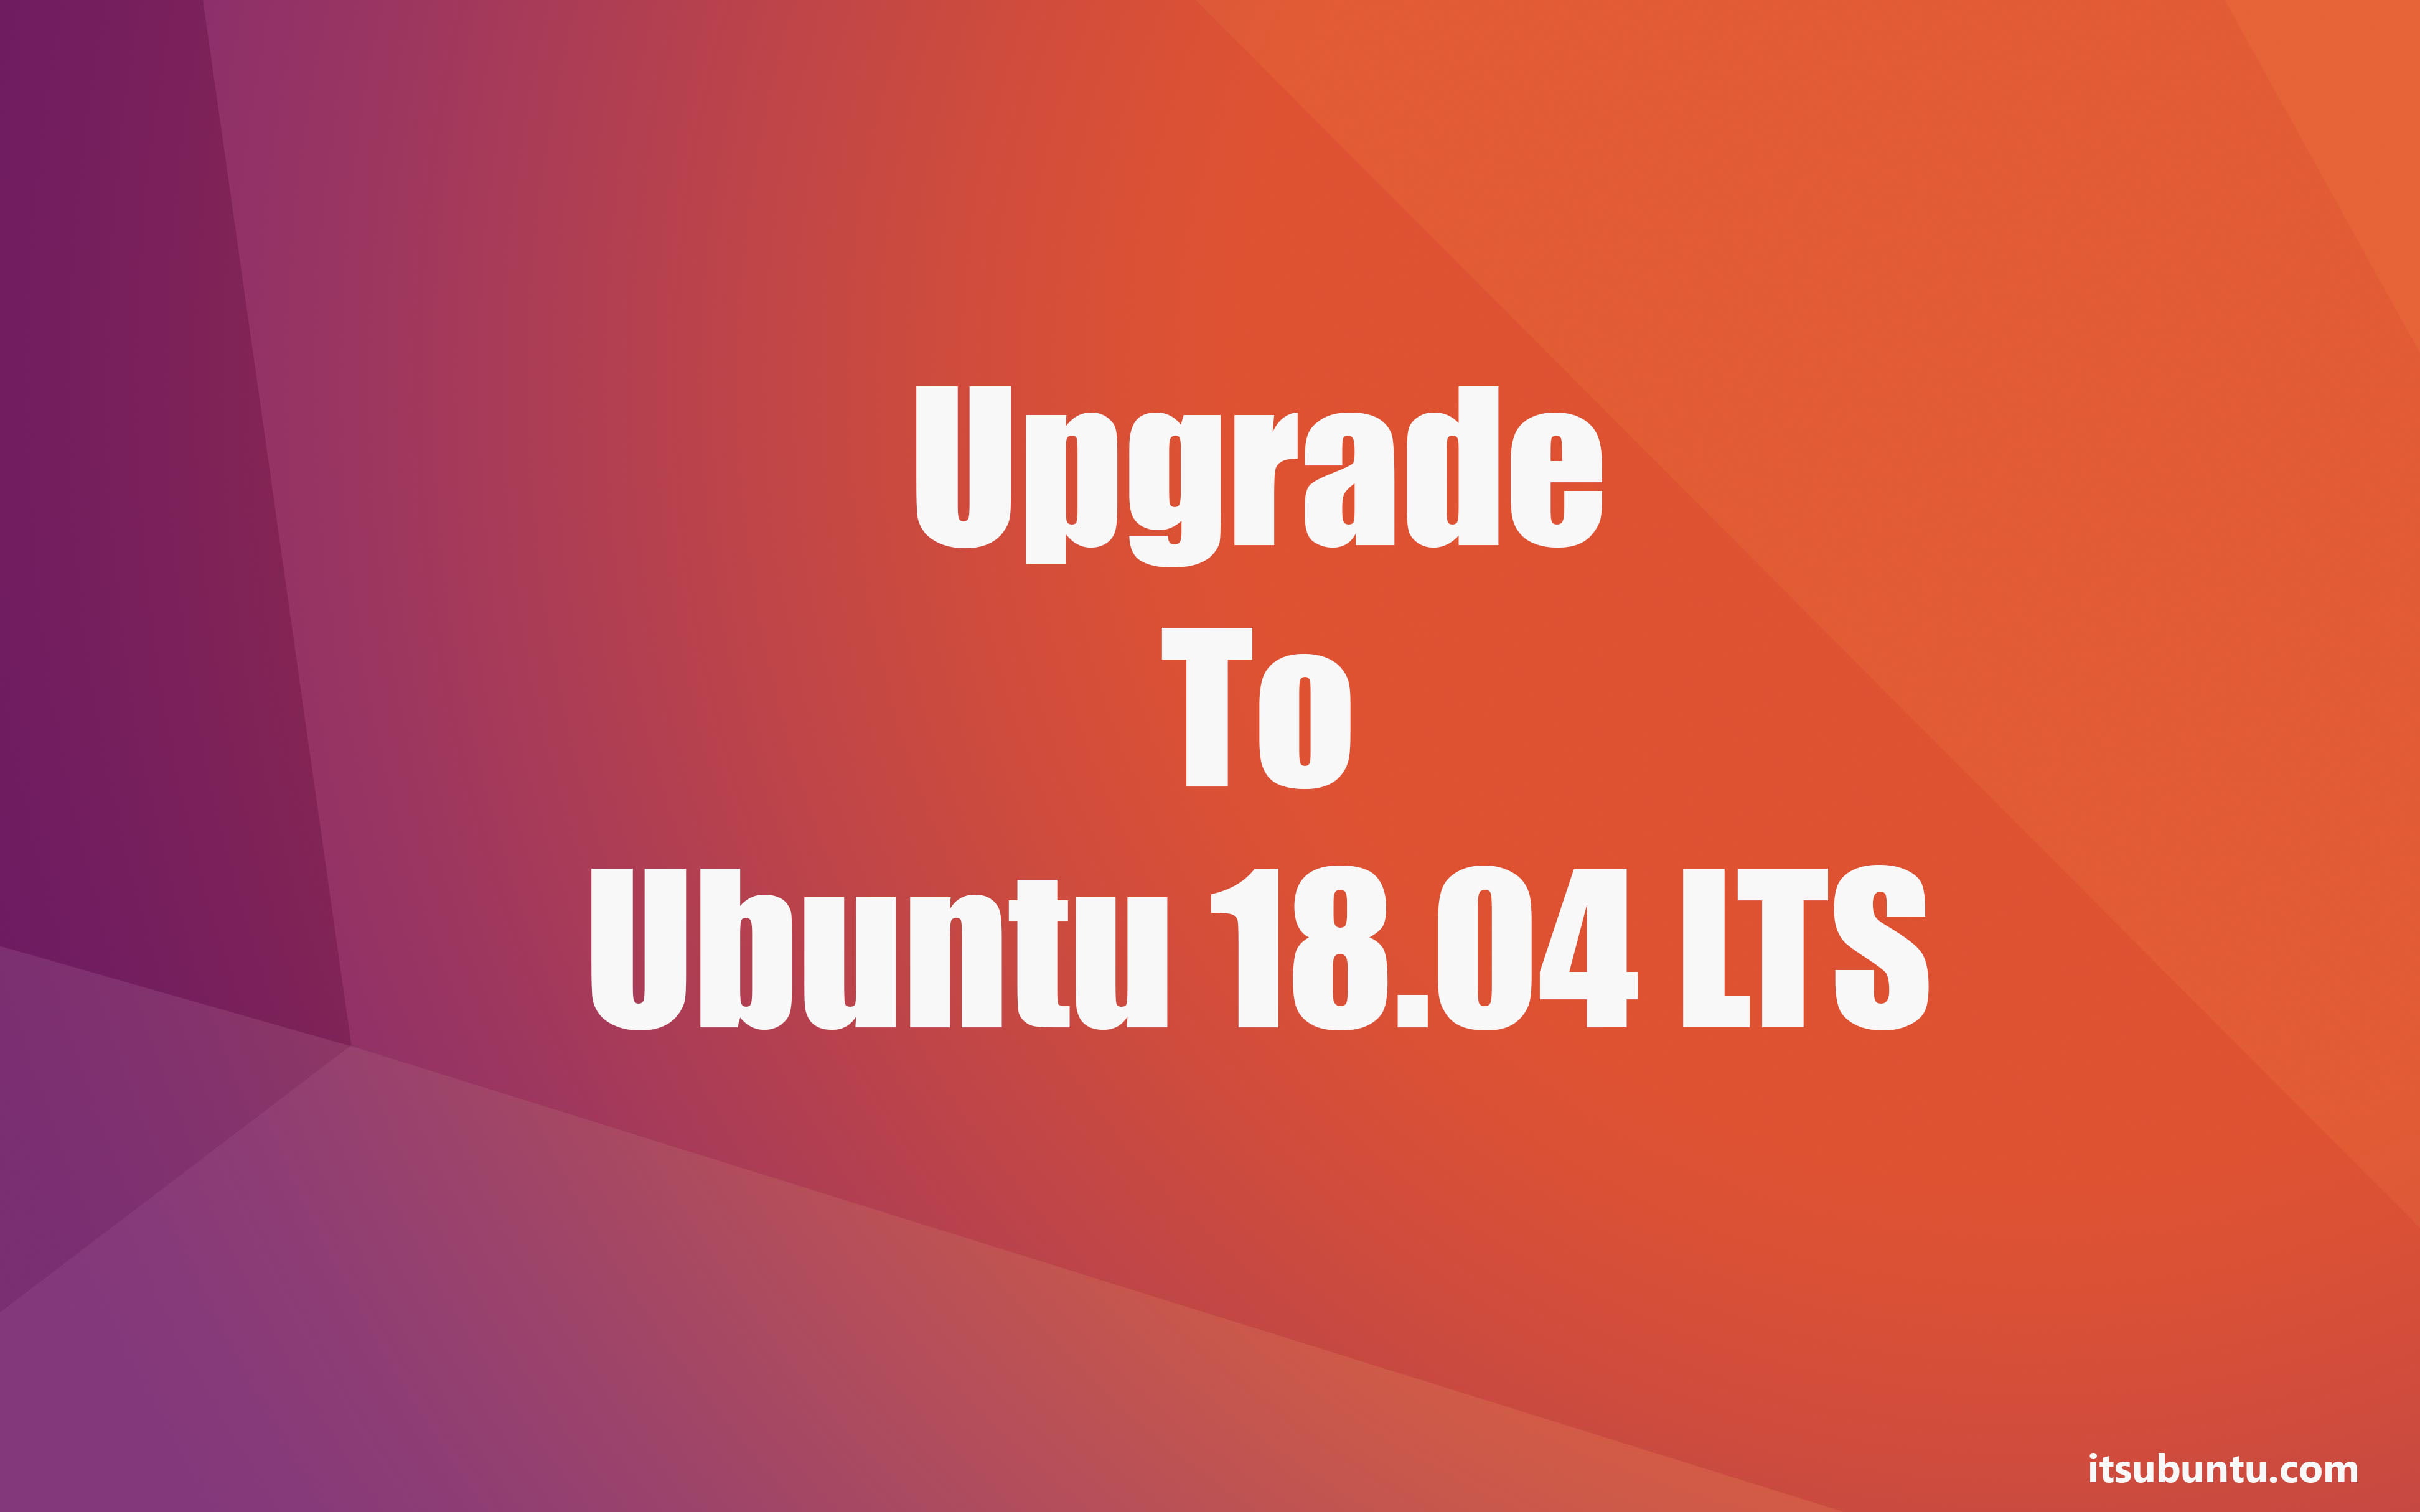 ubuntu 16.04 to ubuntu 18.04